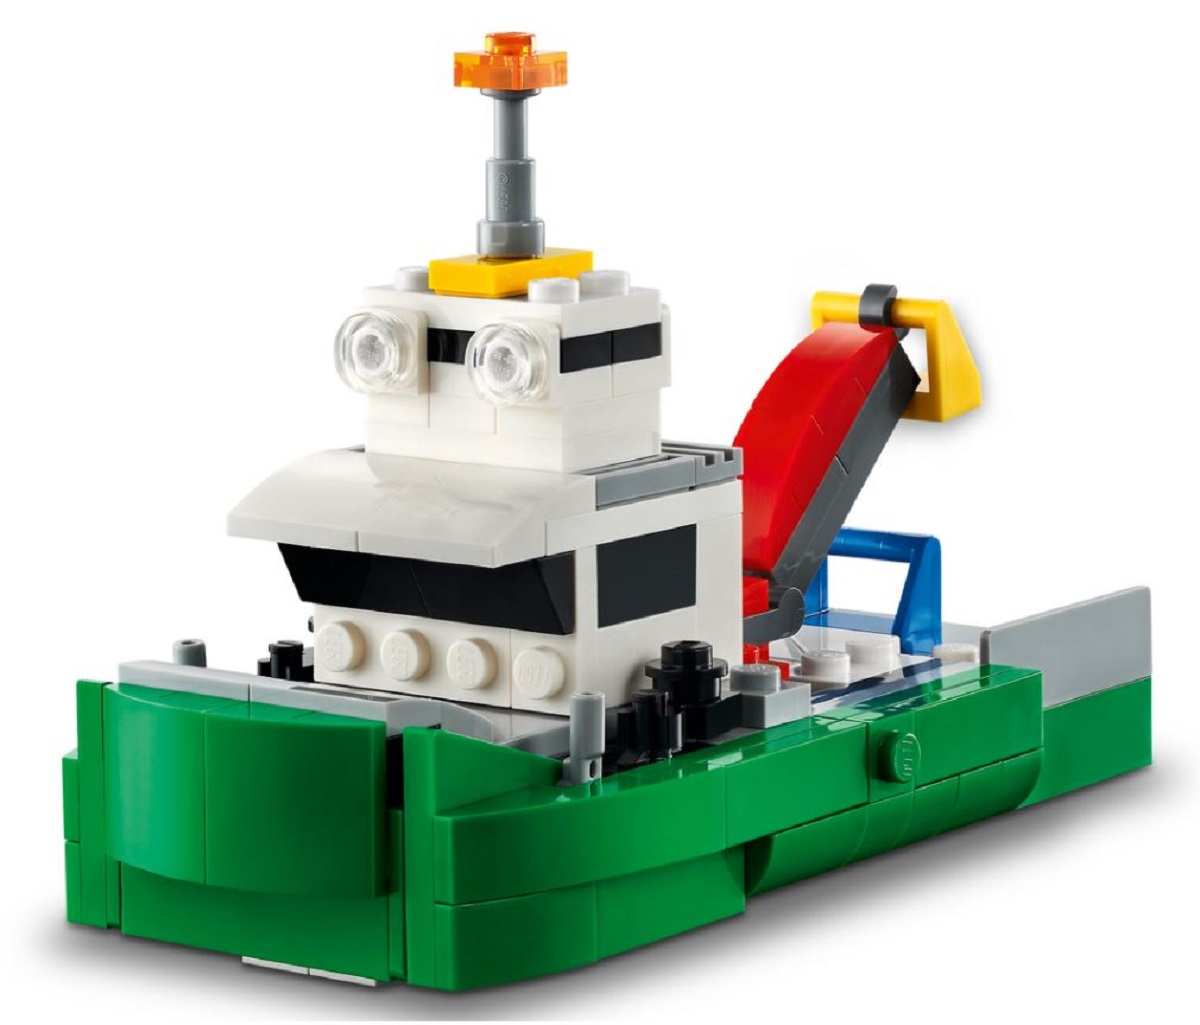 Lego Creator. Transportor de masini de curse